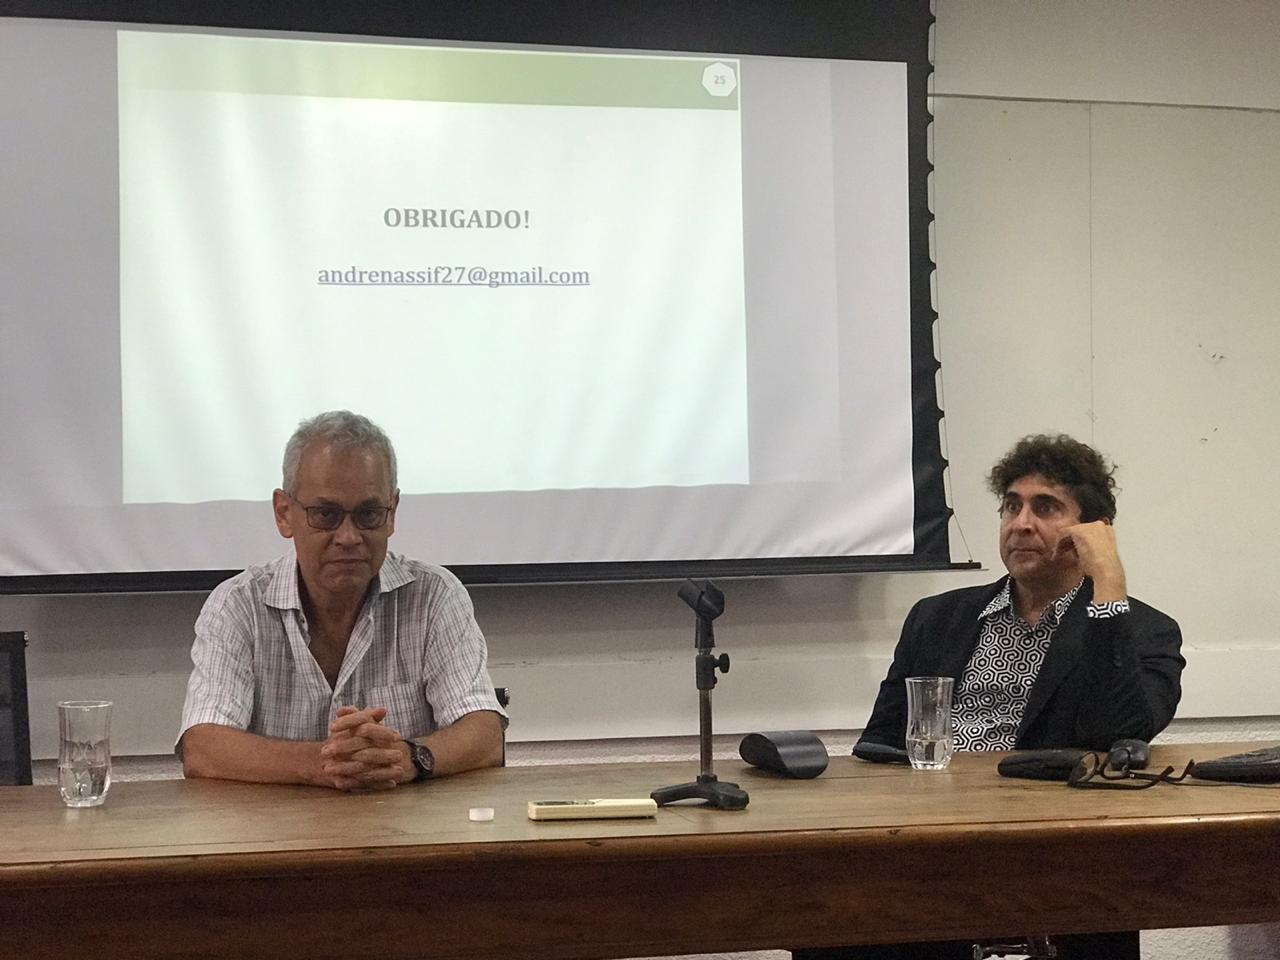 Seminário “Desenvolvimento econômico no Brasil: entraves e perspectivas” (Prof. Dr. André Nassif) – 1/11/2019